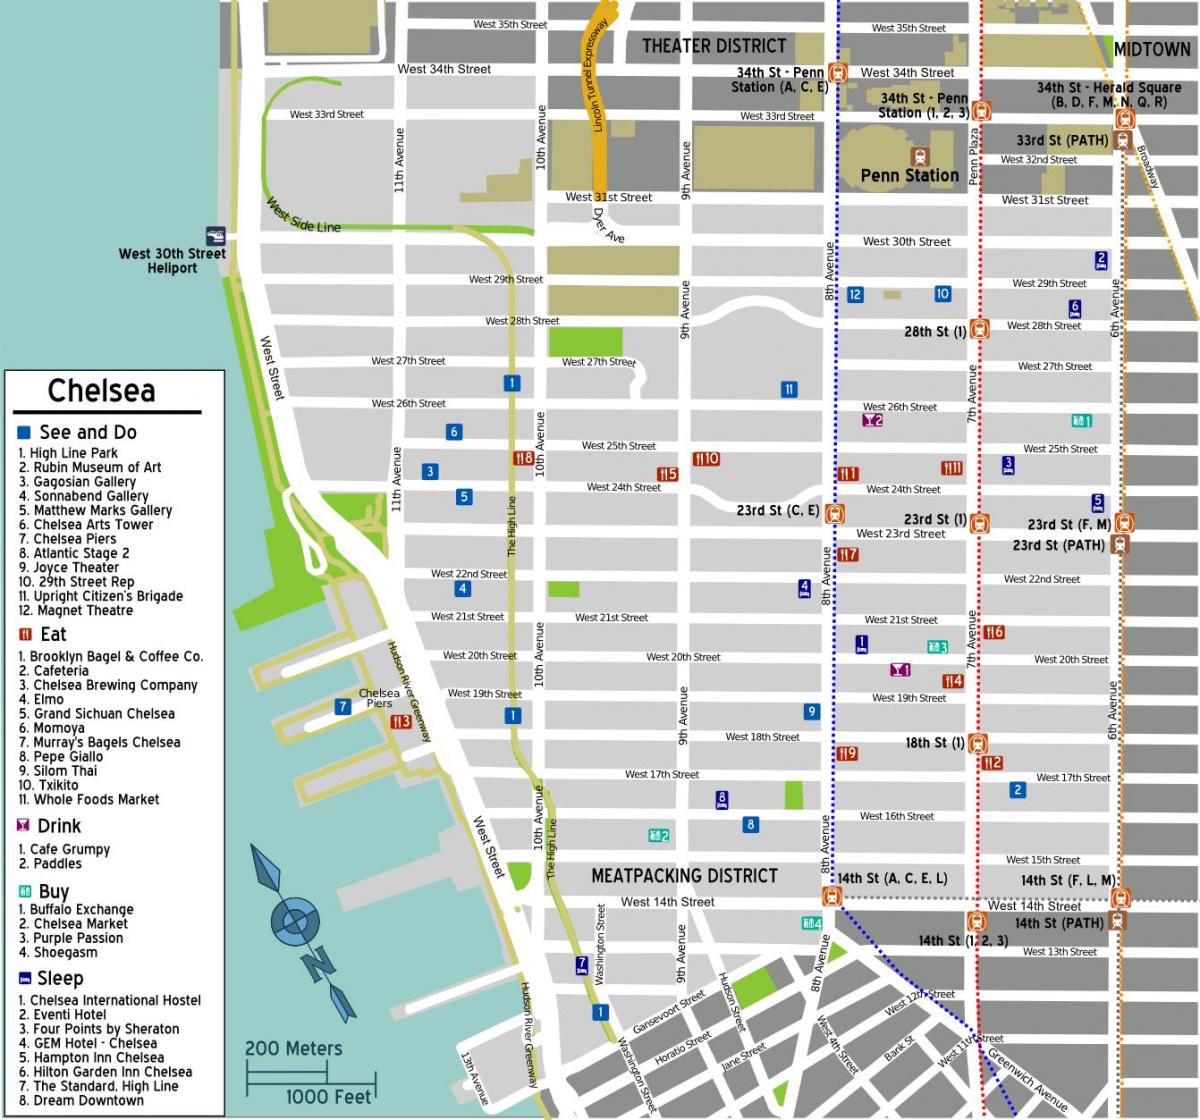 რუკა ჩელსი მანჰეტენზე